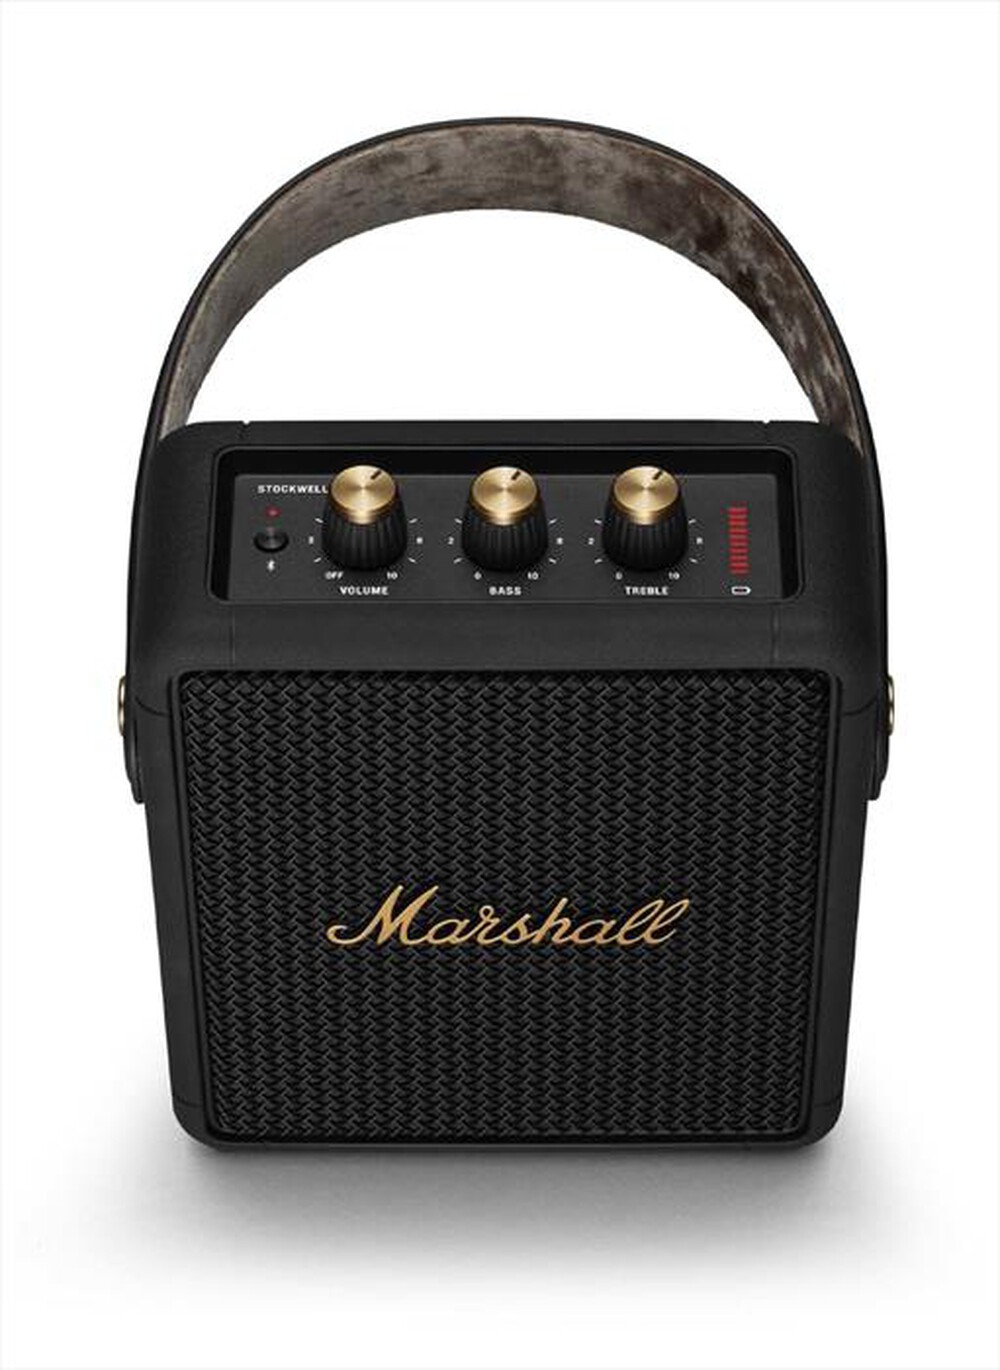 "MARSHALL - Speaker Stockwell II-Nero"